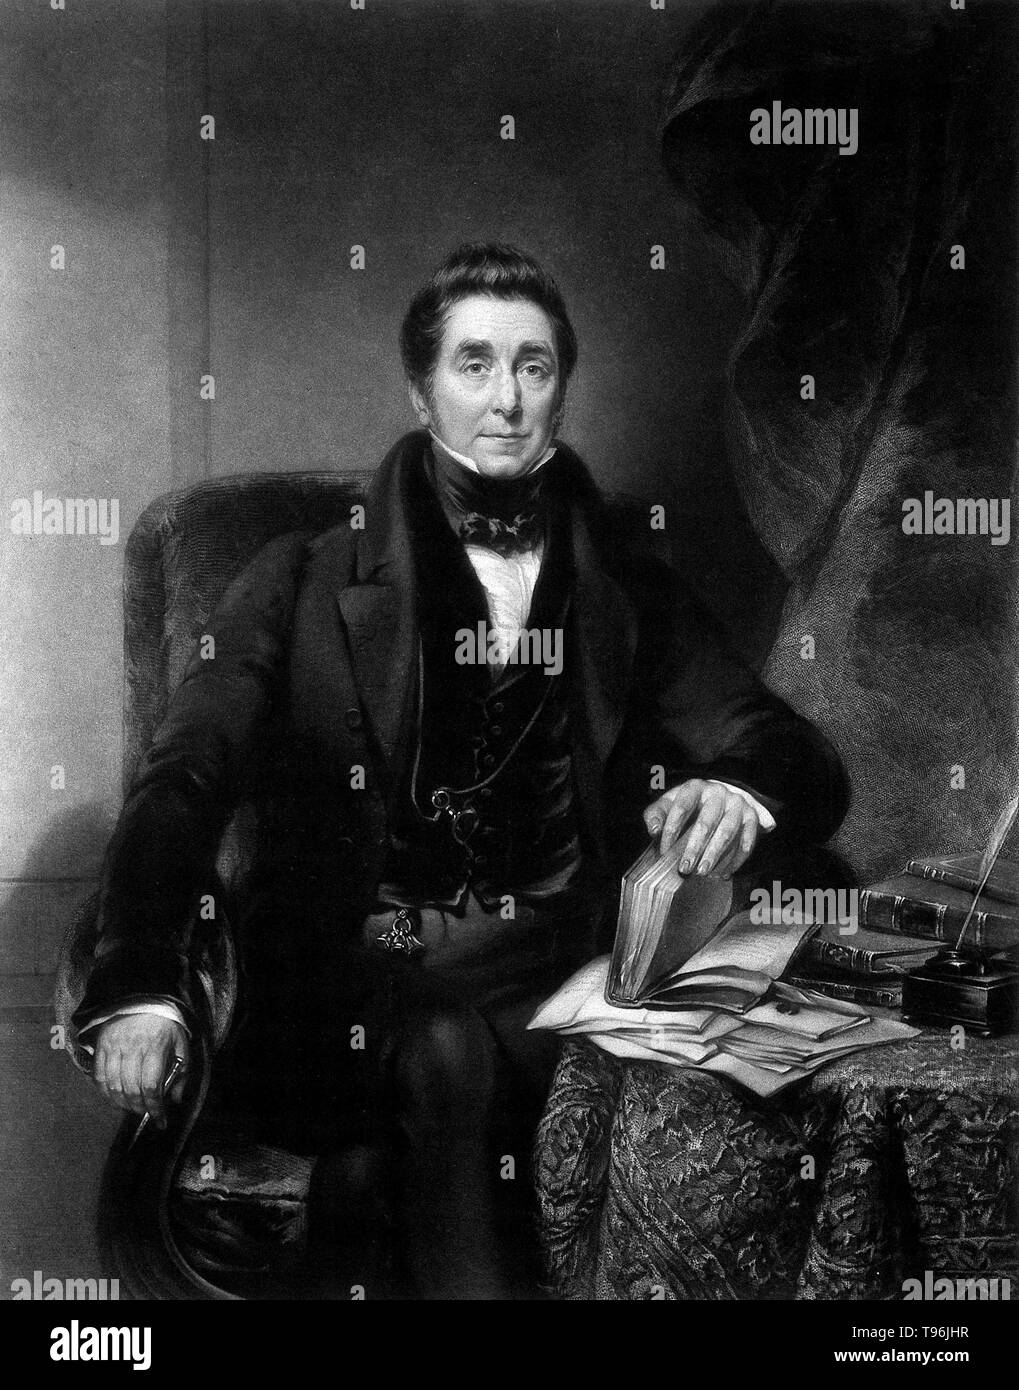 James Johnson (Février 1777 - Octobre 10, 1845) était un médecin et écrivain irlandais sur les maladies des climats tropicaux. Né en Irlande, à l'âge précoce de 15 ans, il devient apprenti à un chirurgien-apothicaire. En 1798, il déménage à Londres et réussi l'examen du chirurgien. Il a été nommé compagnon de chirurgiens sur un bâtiment de guerre. En 1800, il a pris part à une expédition à l'Egypte et, en 1803, s'embarque pour l'Inde. Banque D'Images